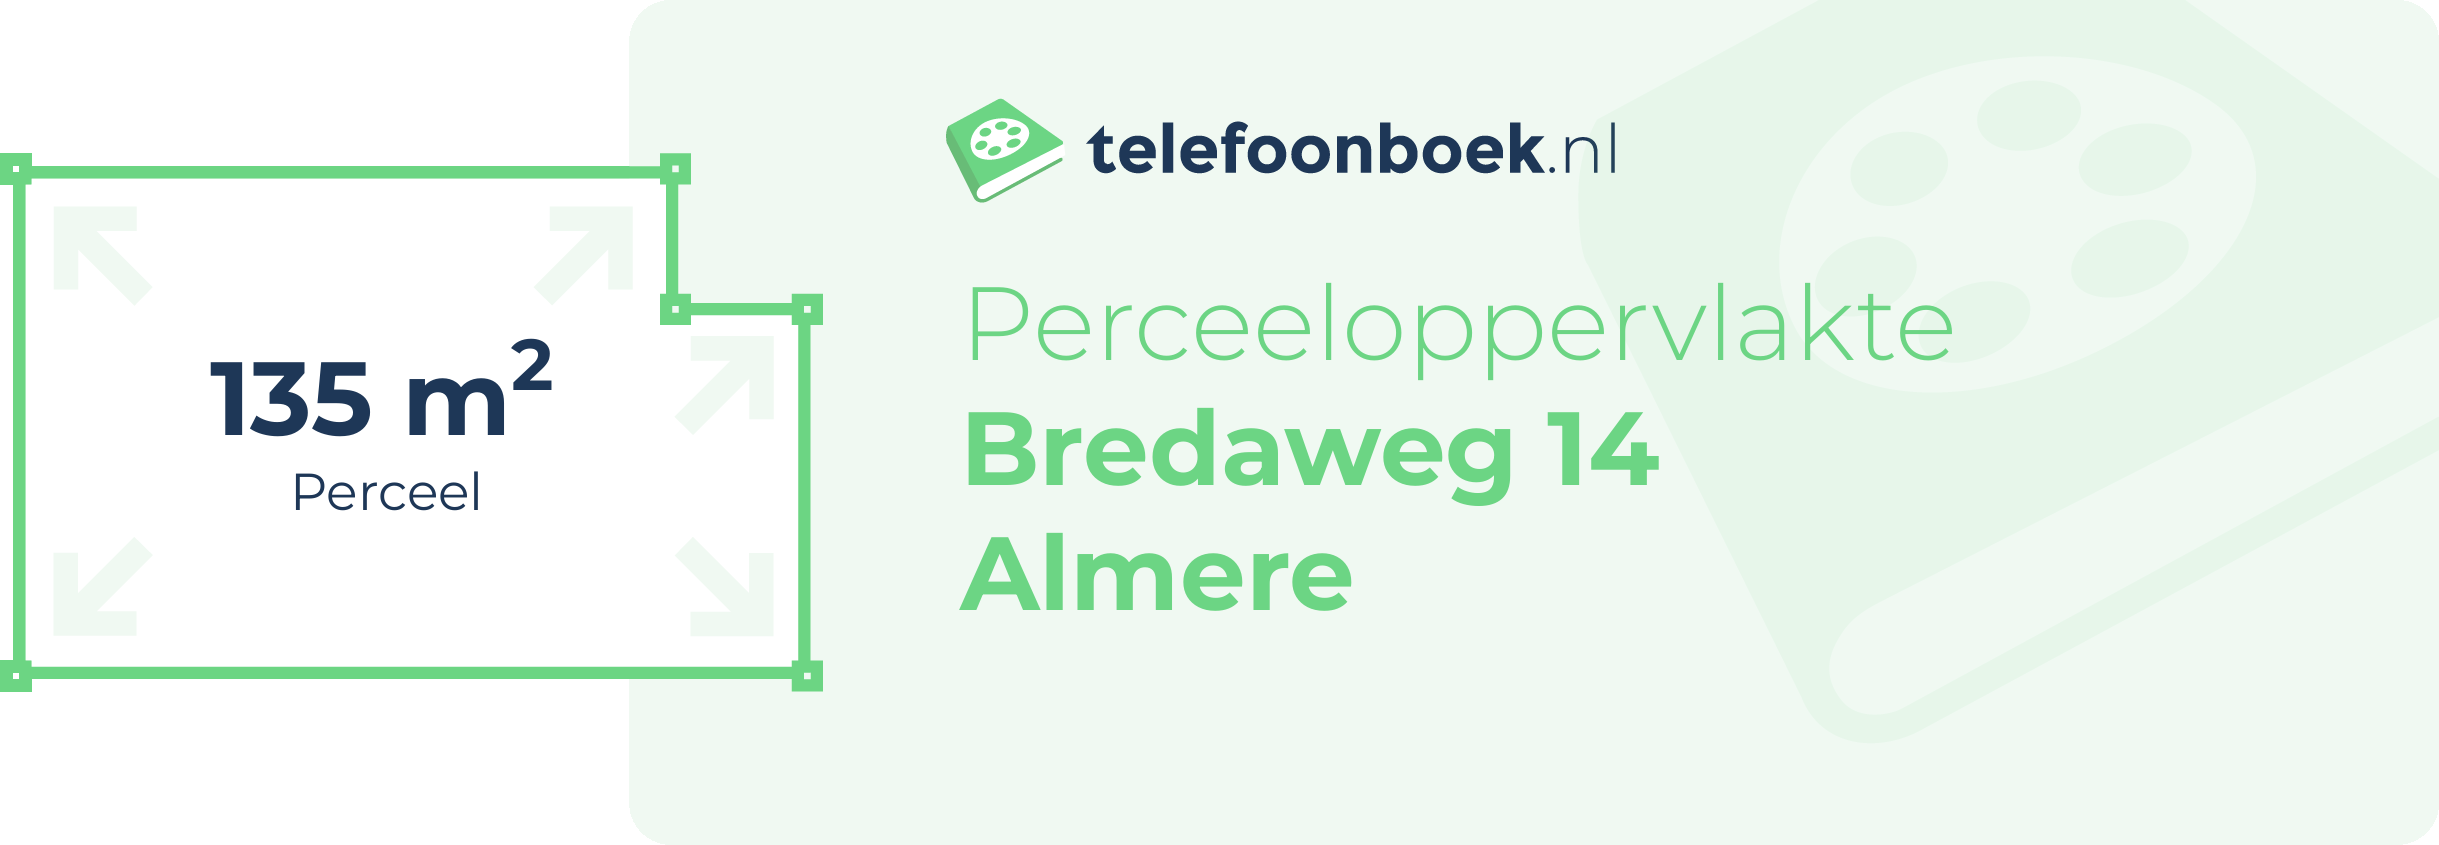 Perceeloppervlakte Bredaweg 14 Almere